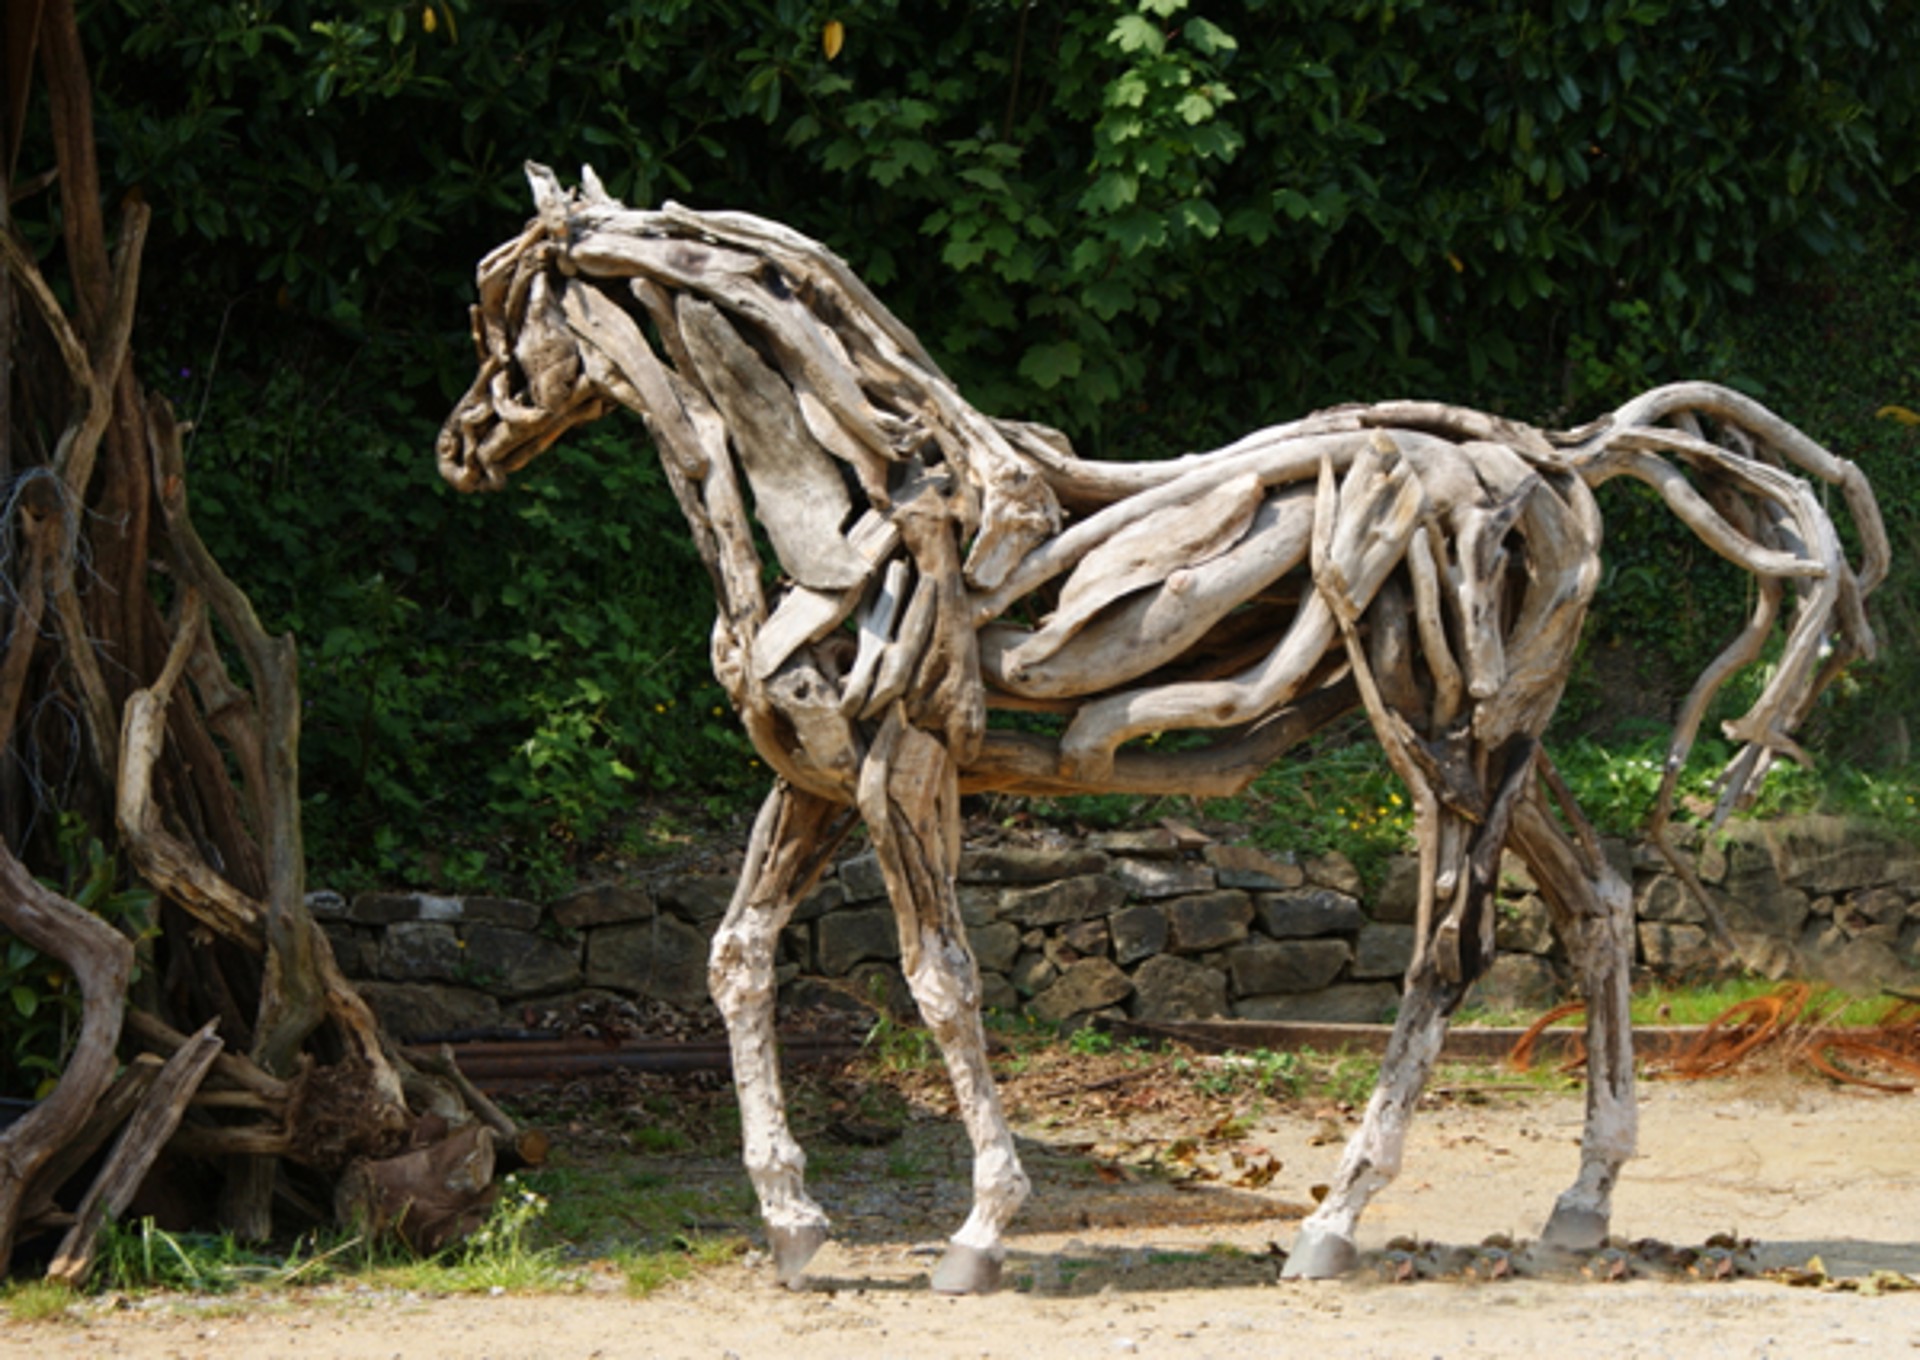 The Eden Horse by Heather Jansch